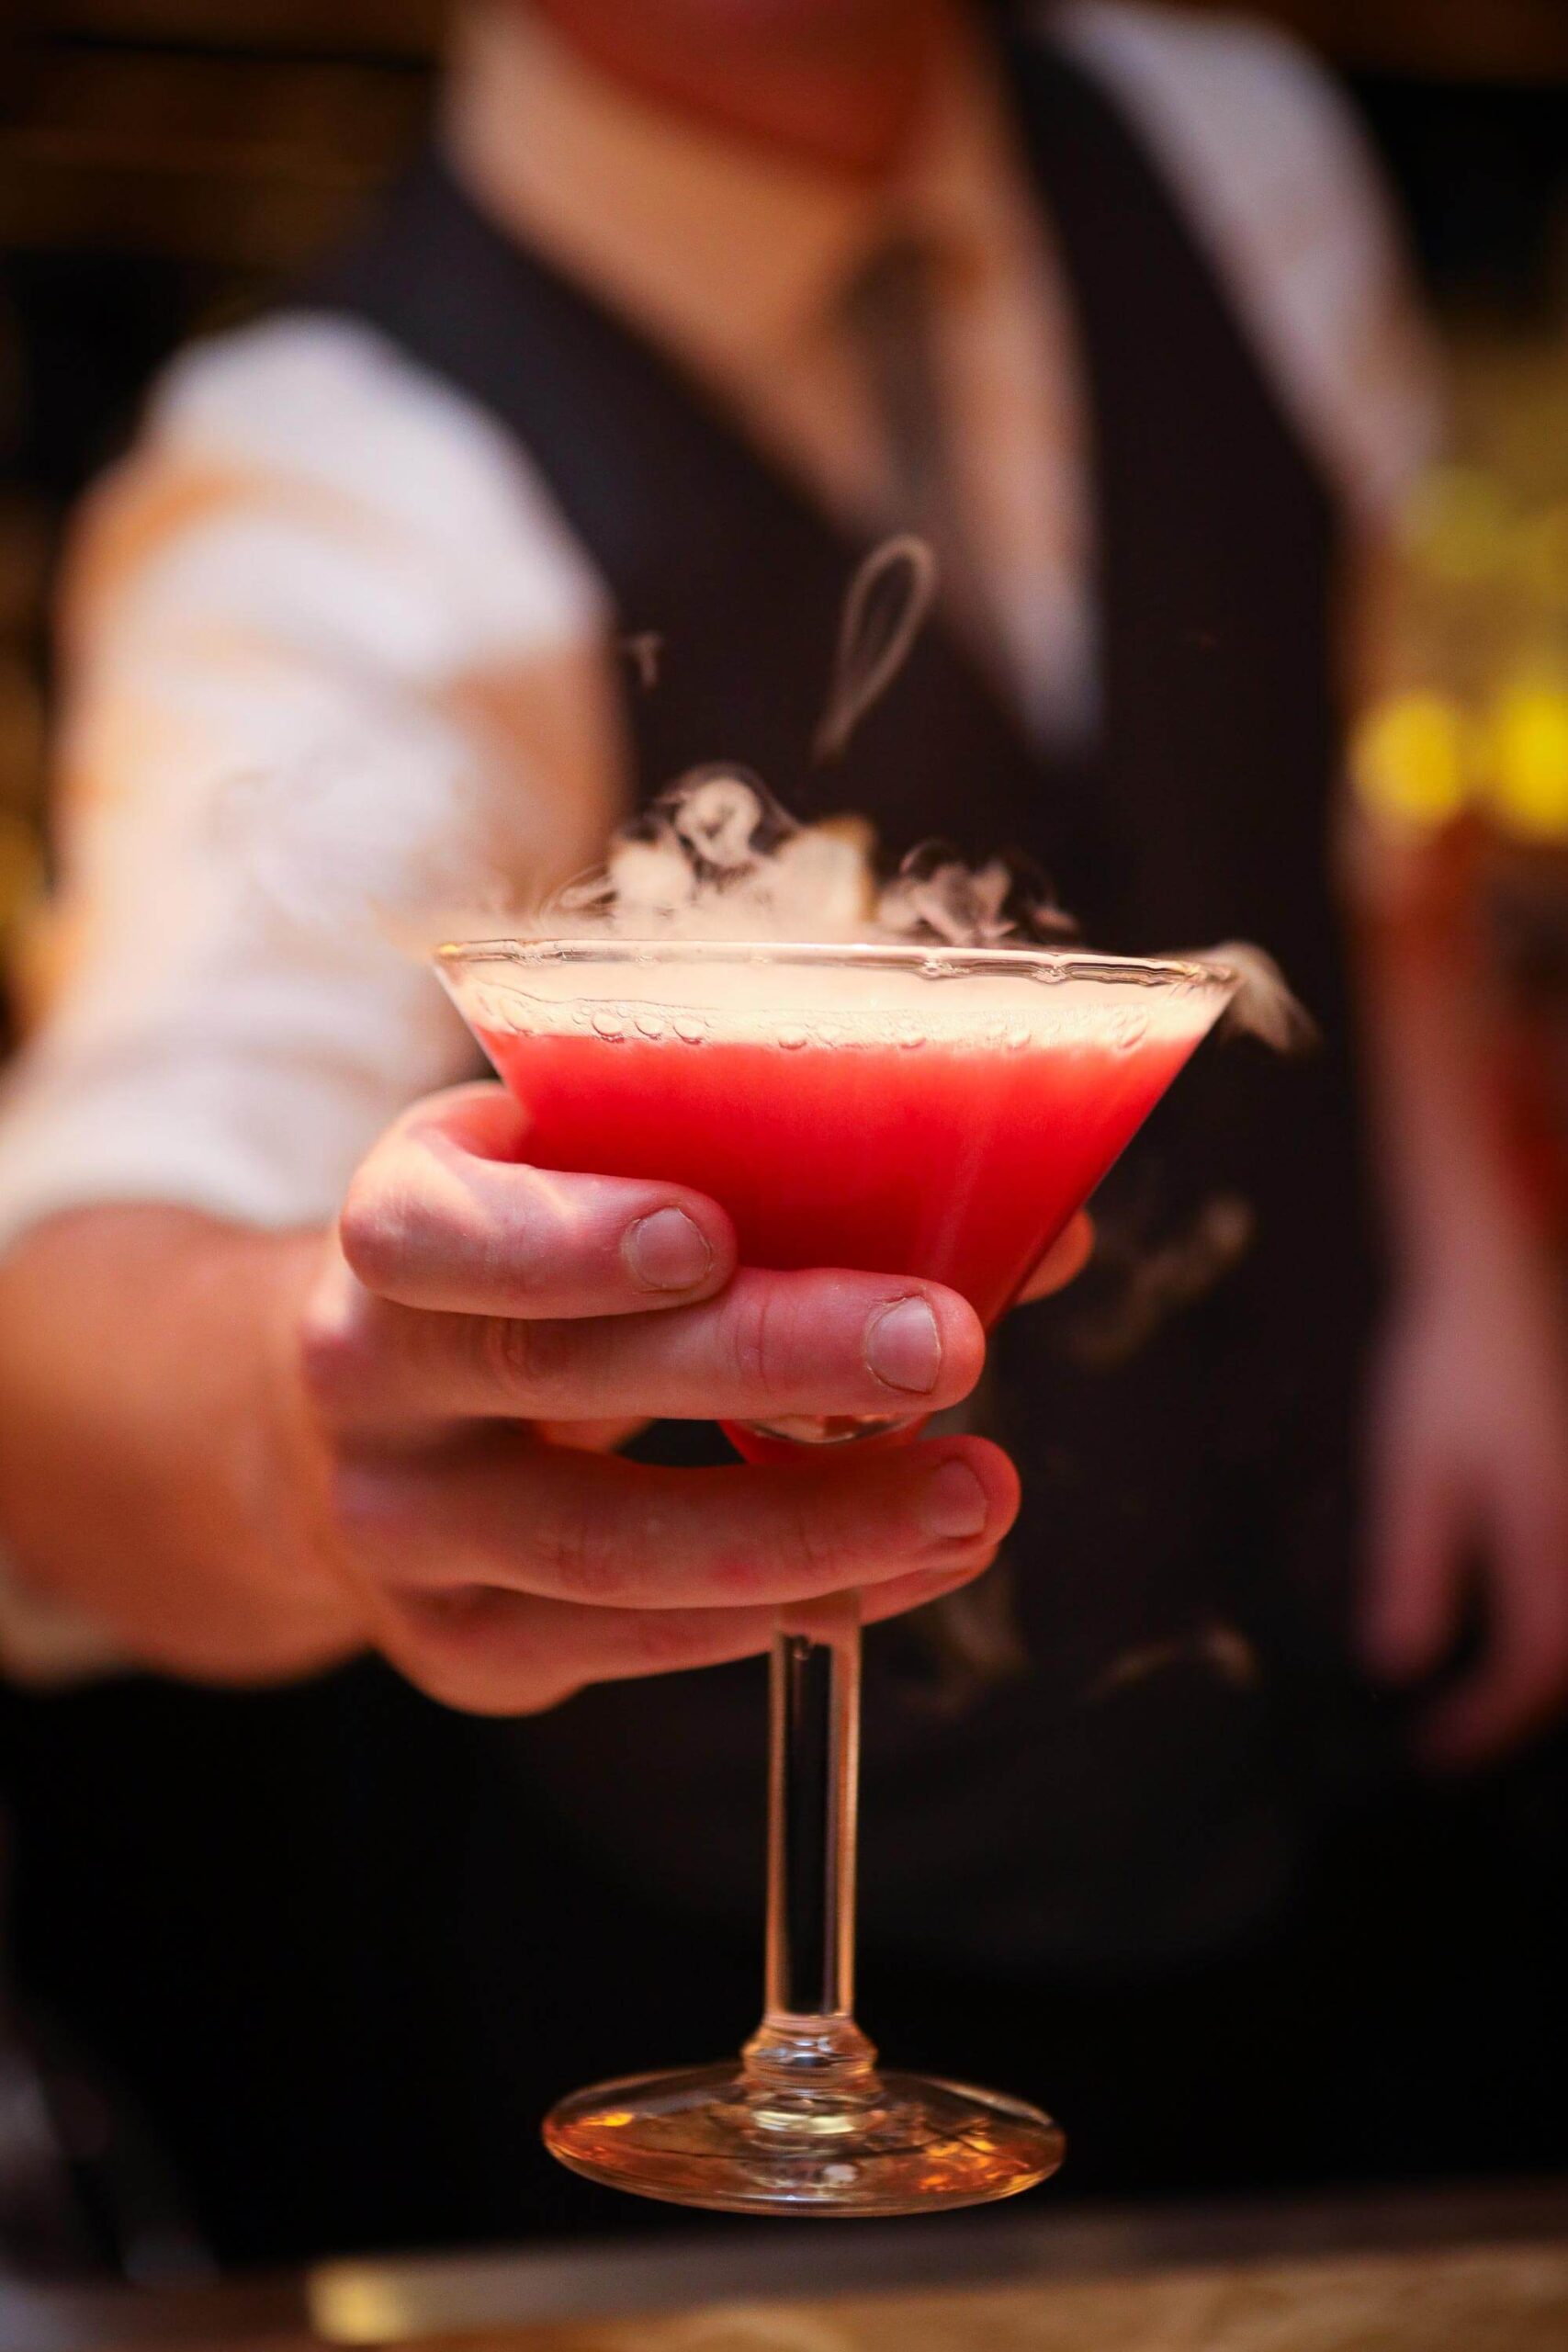 Bartender serving pink martini cocktail